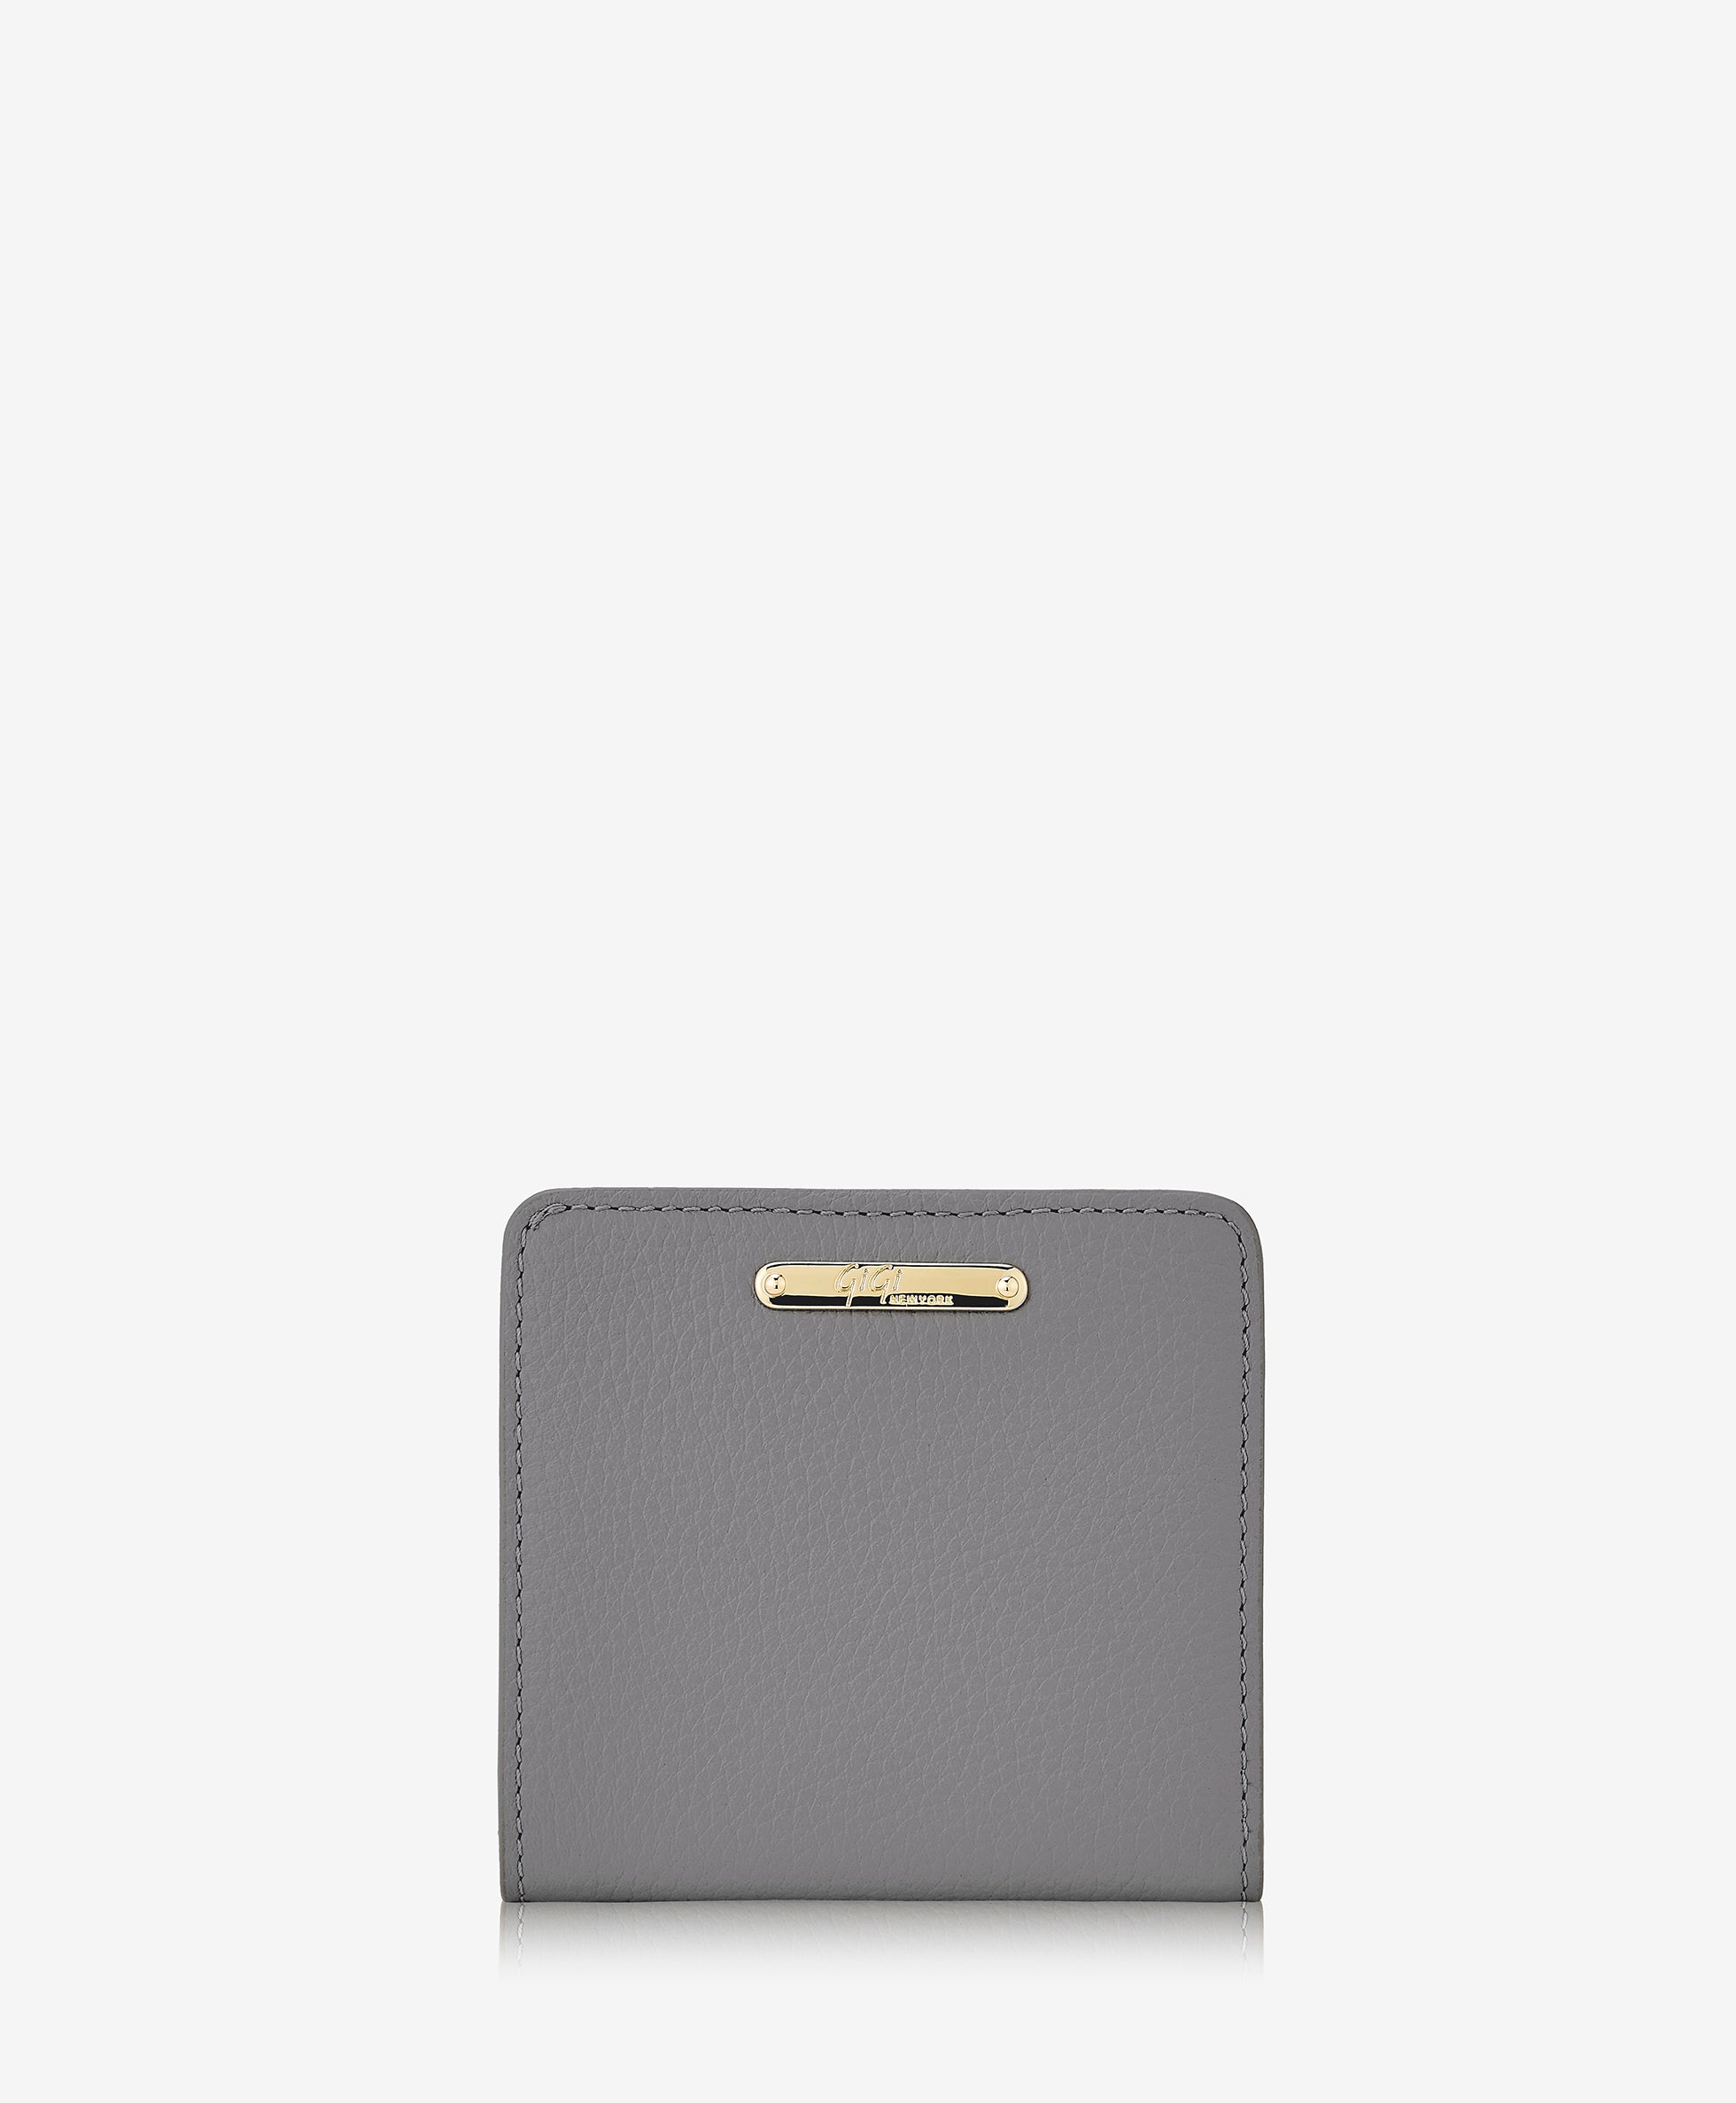 Mini Foldover Wallet | Slate Pebble Grain Leather